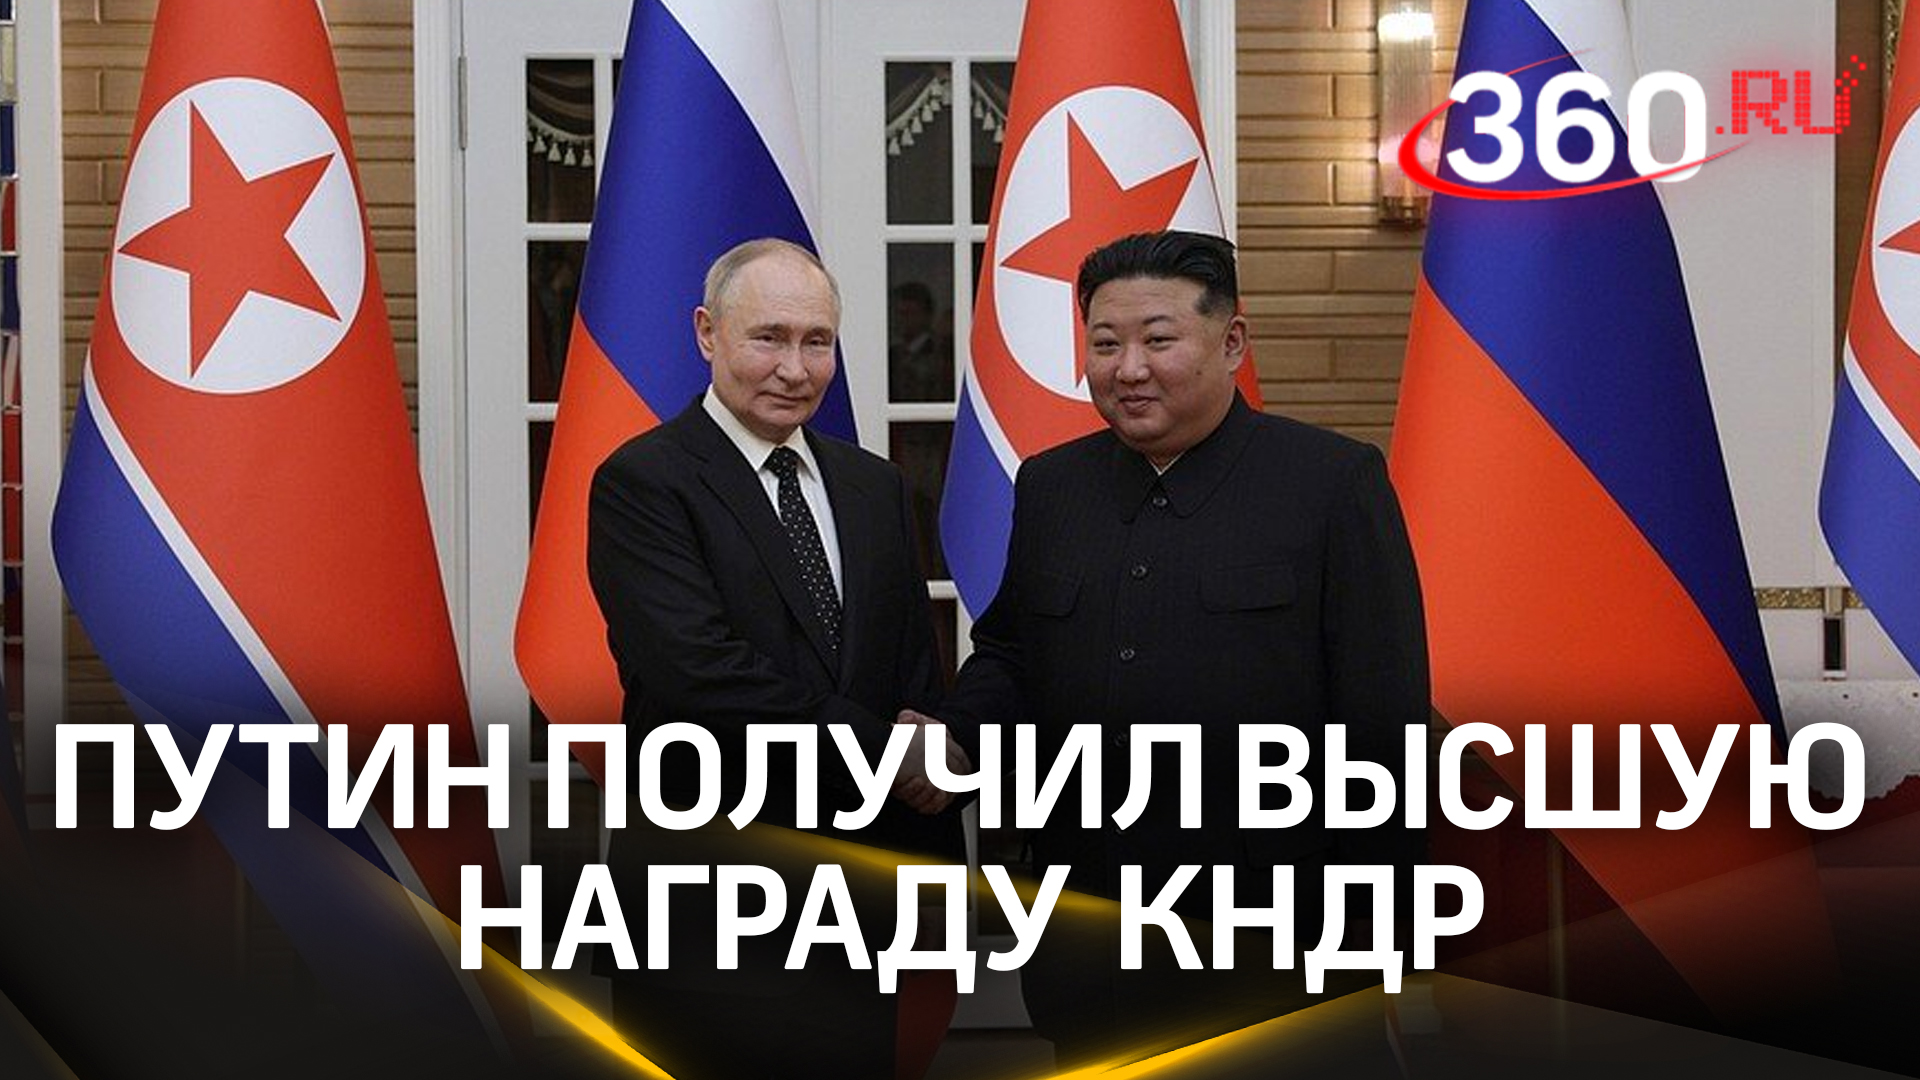 Владимир Путин получил высшую награду КНДР - орден Ким Ир Сена